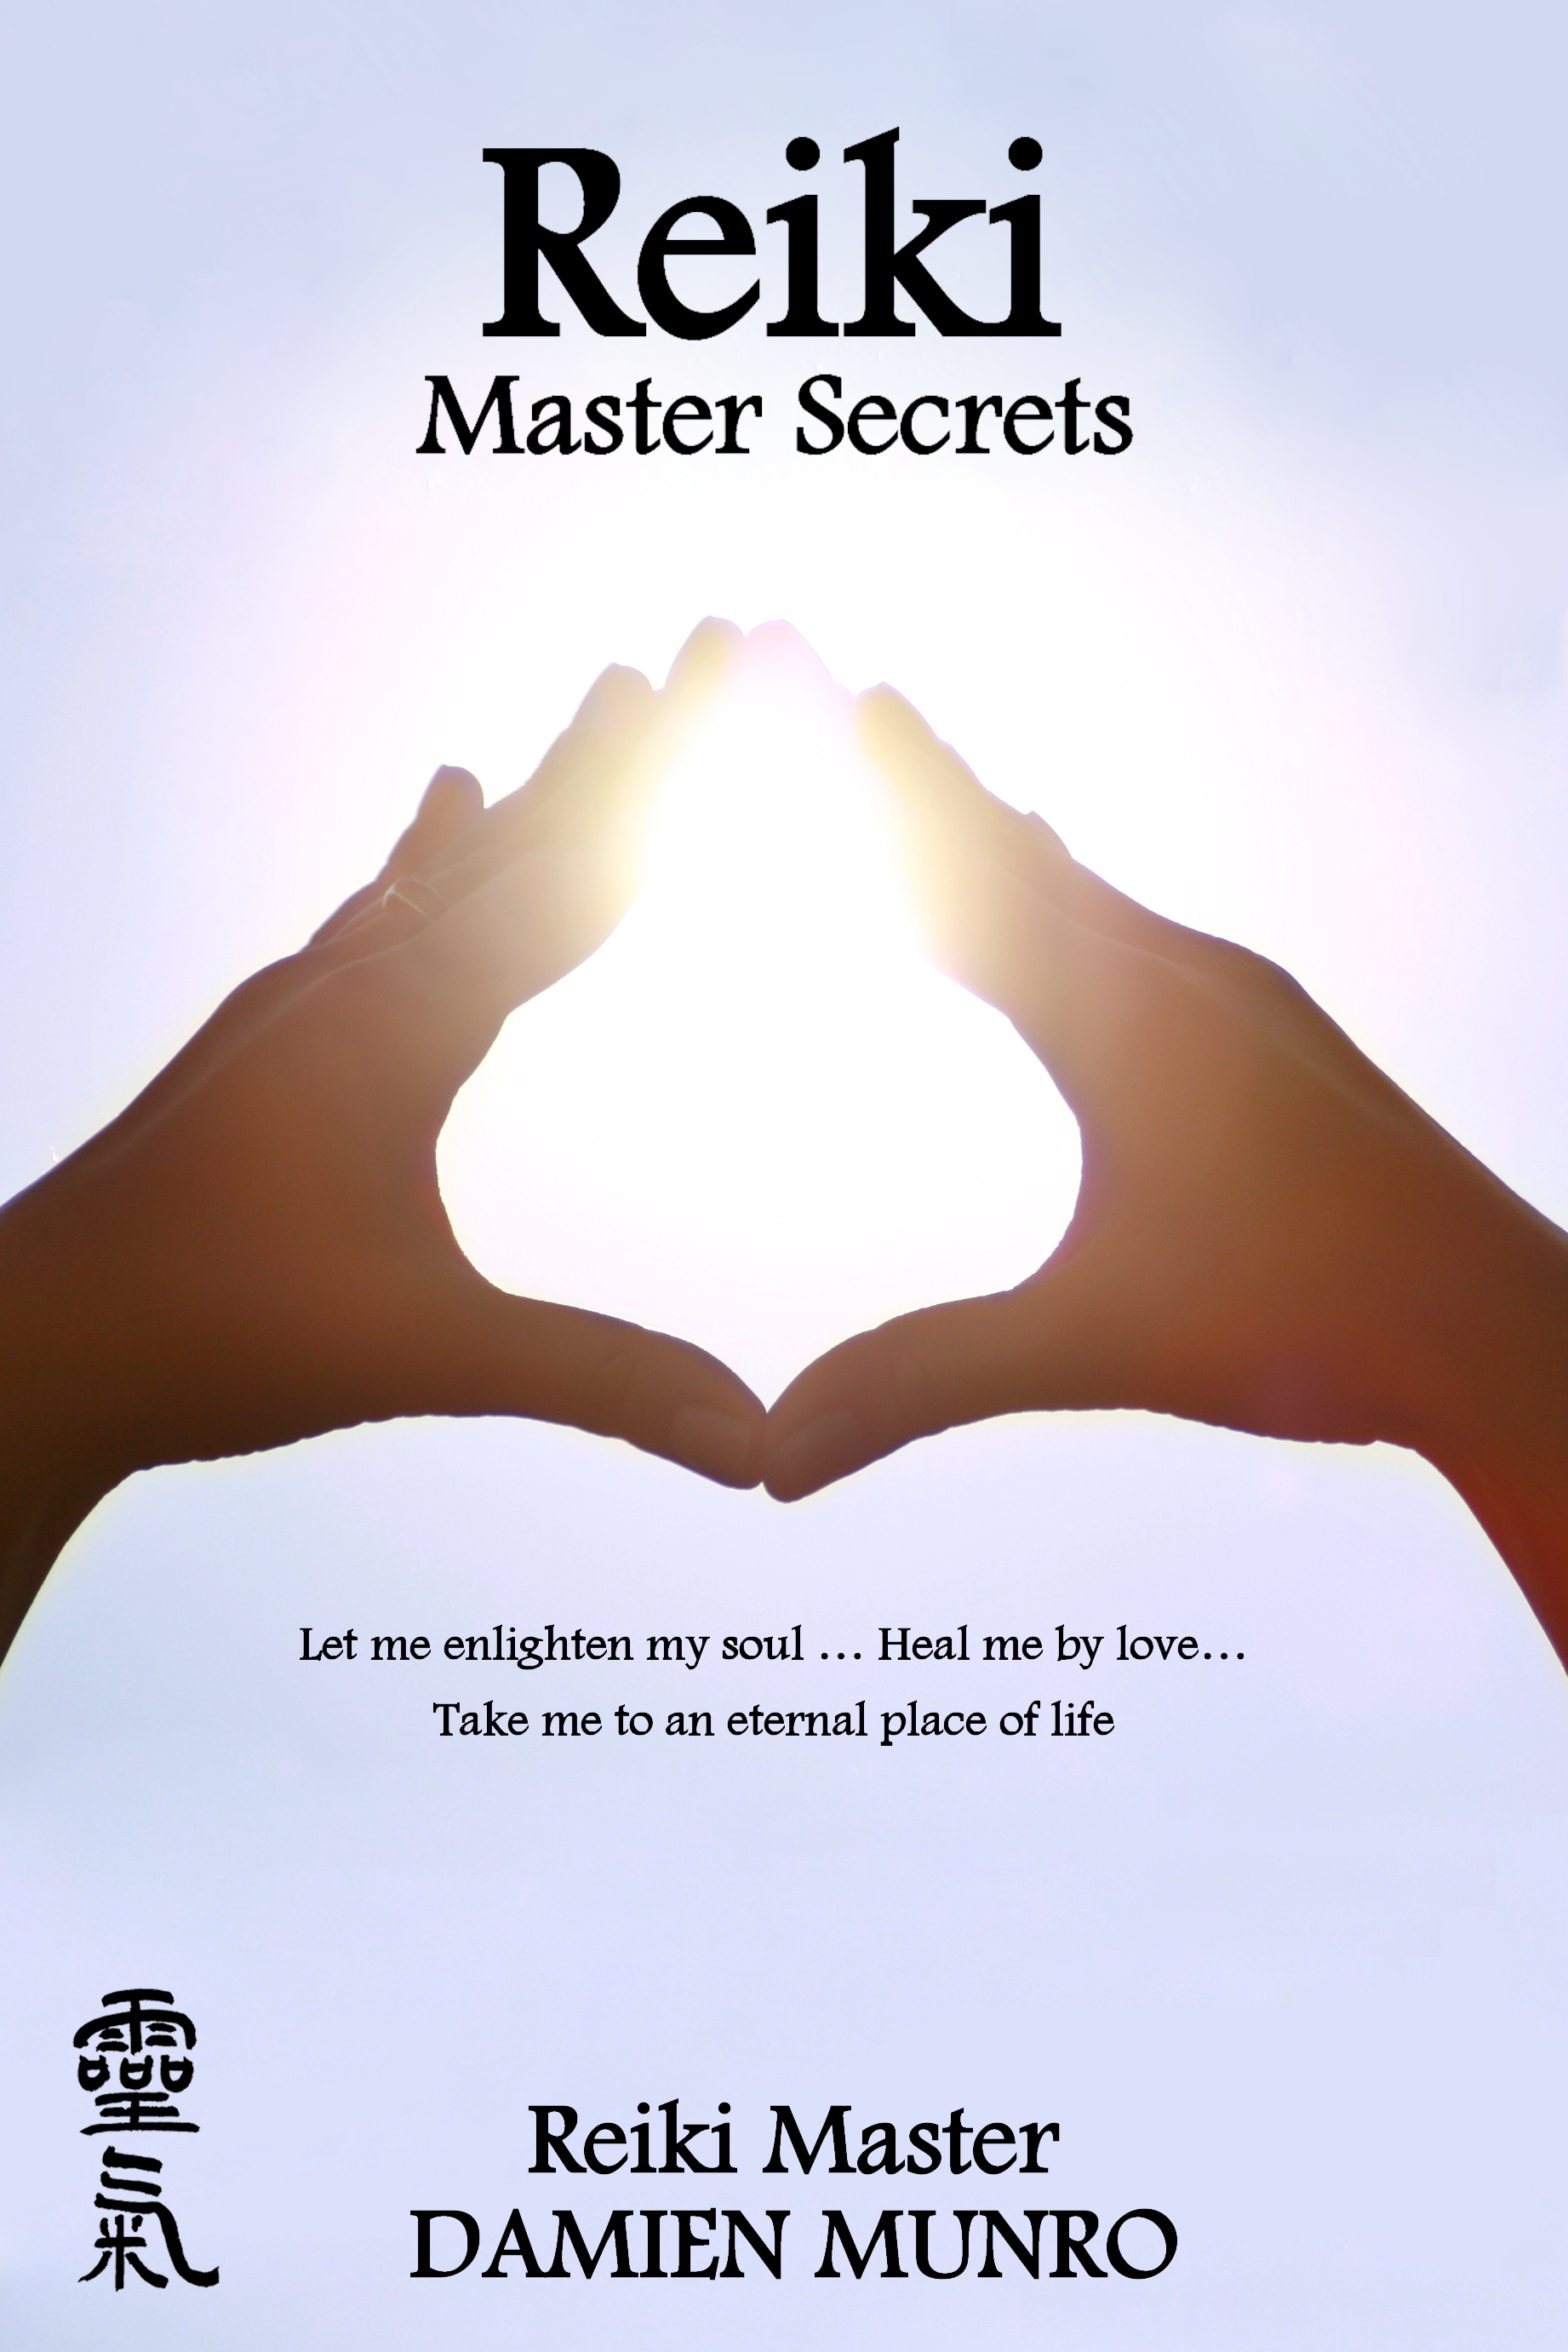 Master secrets. Рэйки обложка. Книги Рэйки картинки. Кружка Reiki Master. Факты и мифы о Рэйки.